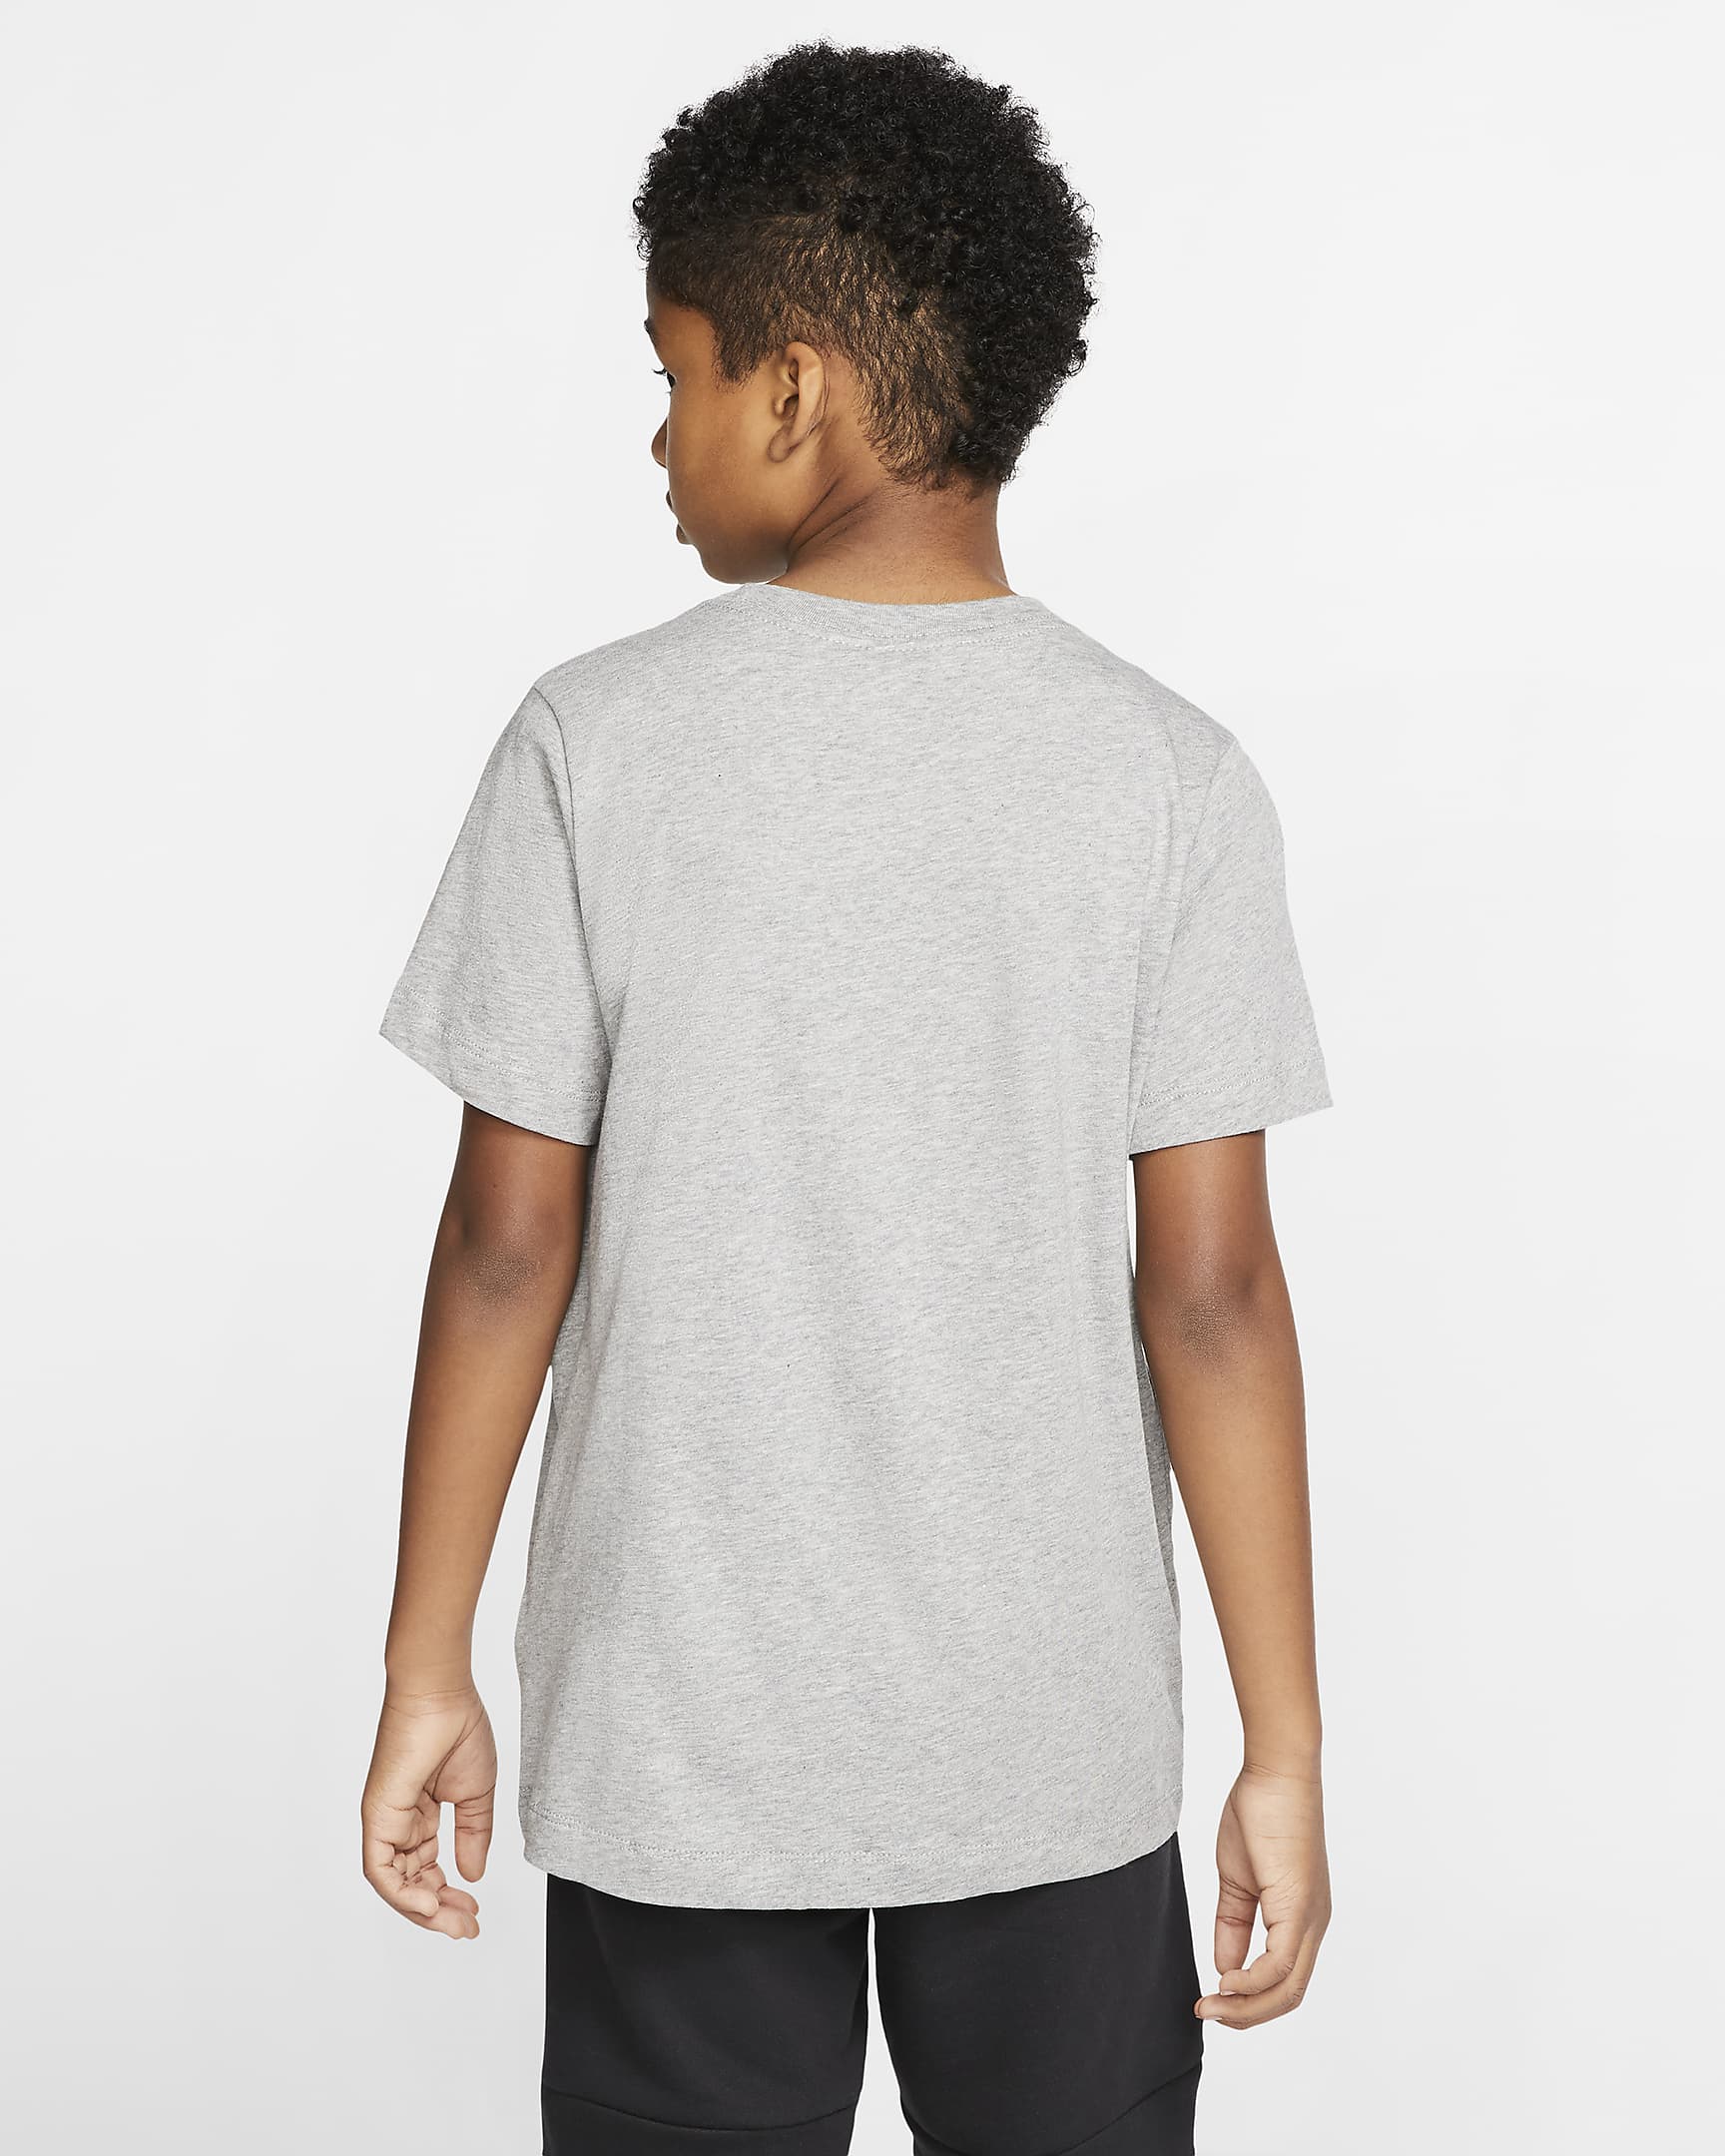 Nike Air Older Kids' (Boys') T-Shirt. Nike ZA